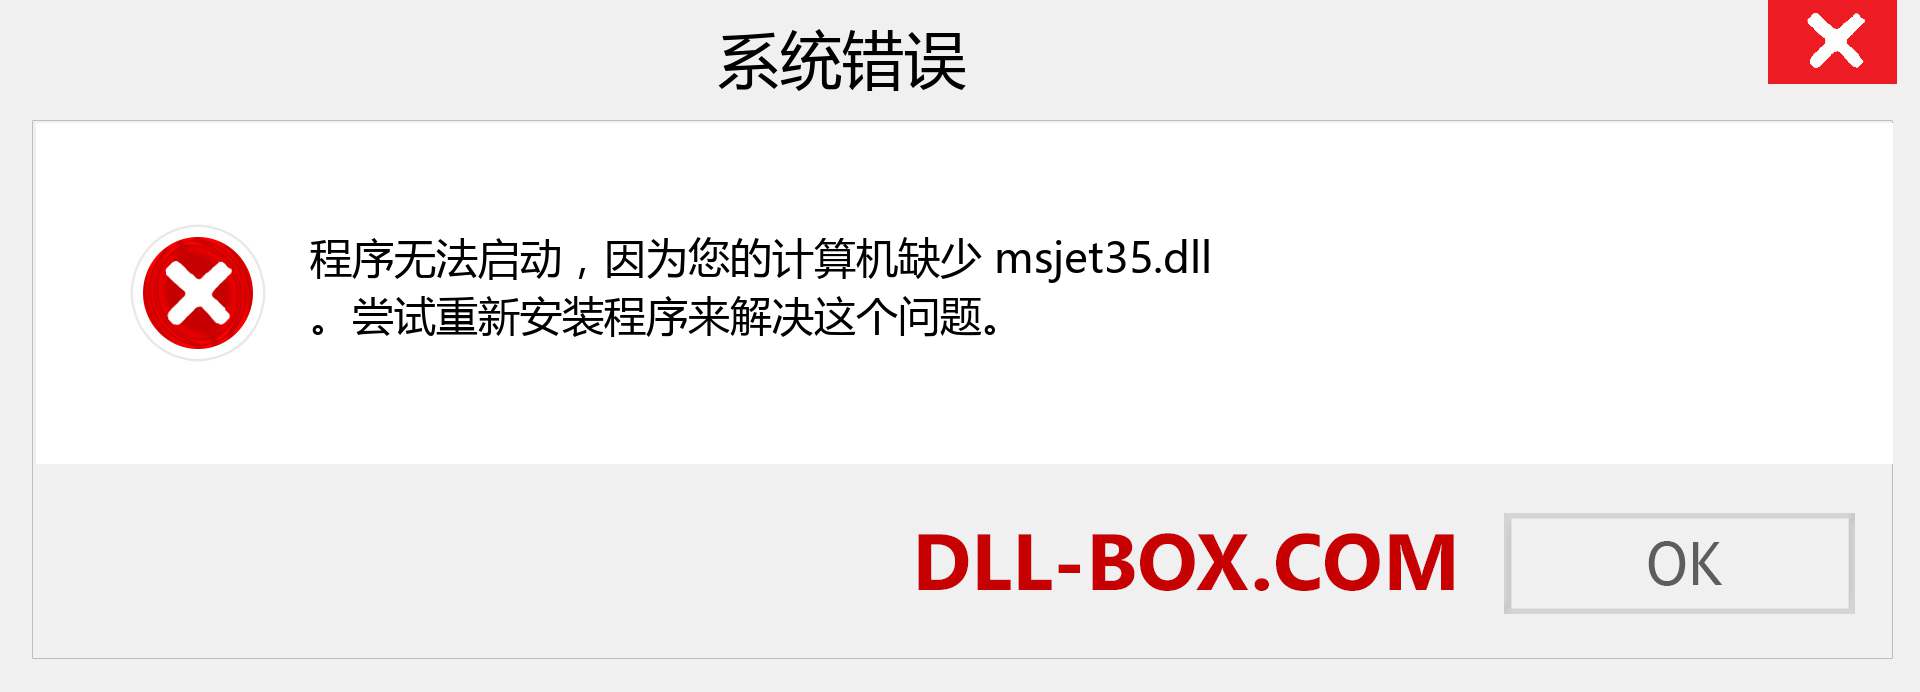 msjet35.dll 文件丢失？。 适用于 Windows 7、8、10 的下载 - 修复 Windows、照片、图像上的 msjet35 dll 丢失错误